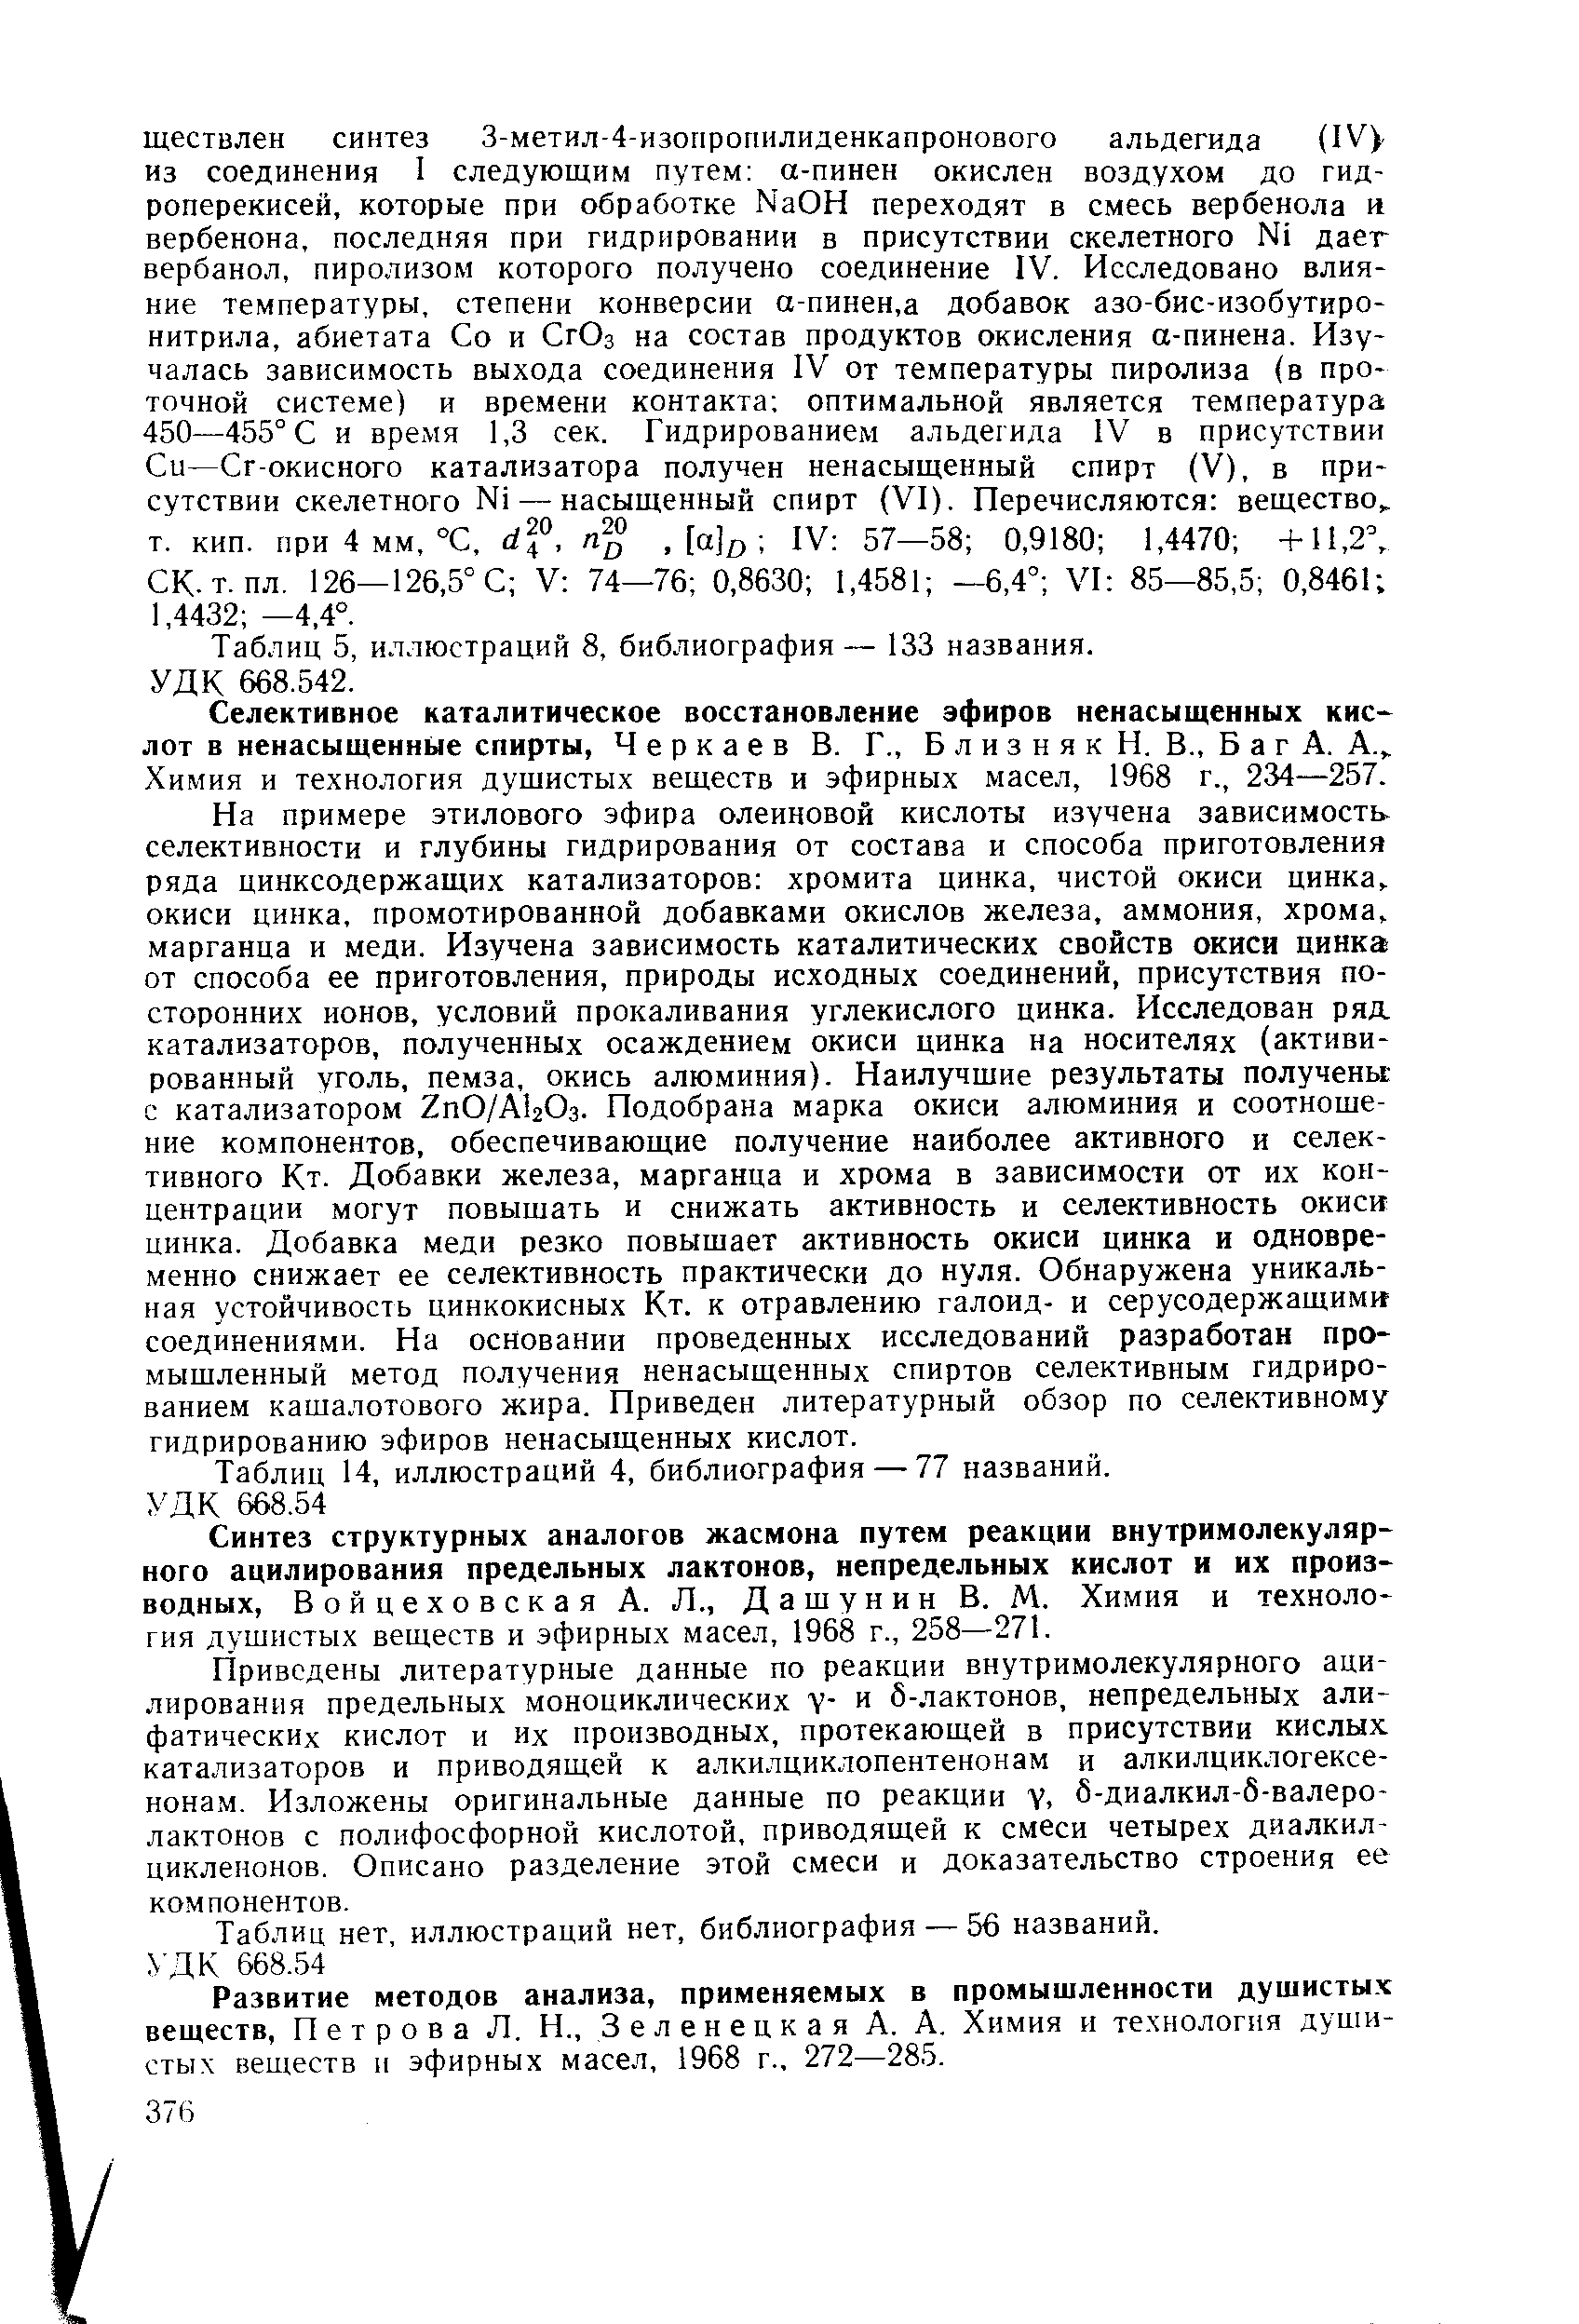 Химия и технология дущистых веществ и эфирных масел, 1968 г., 234—257.